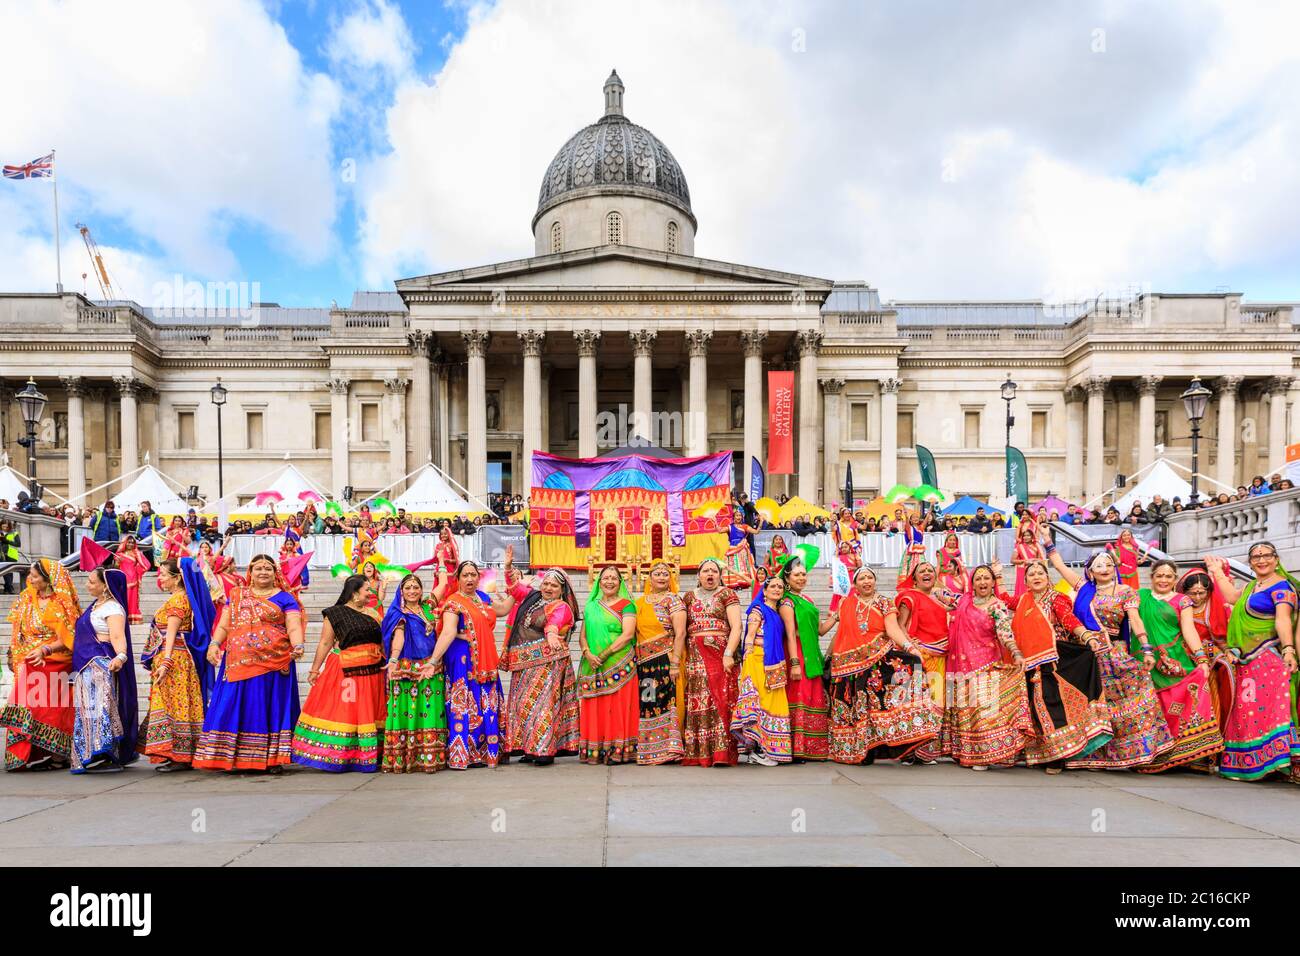 La danse Ghoomar, une danse traditionnelle du Rajastan, ouvre le festival Diwali in the Square sur Trafalgar Square, Londres Banque D'Images